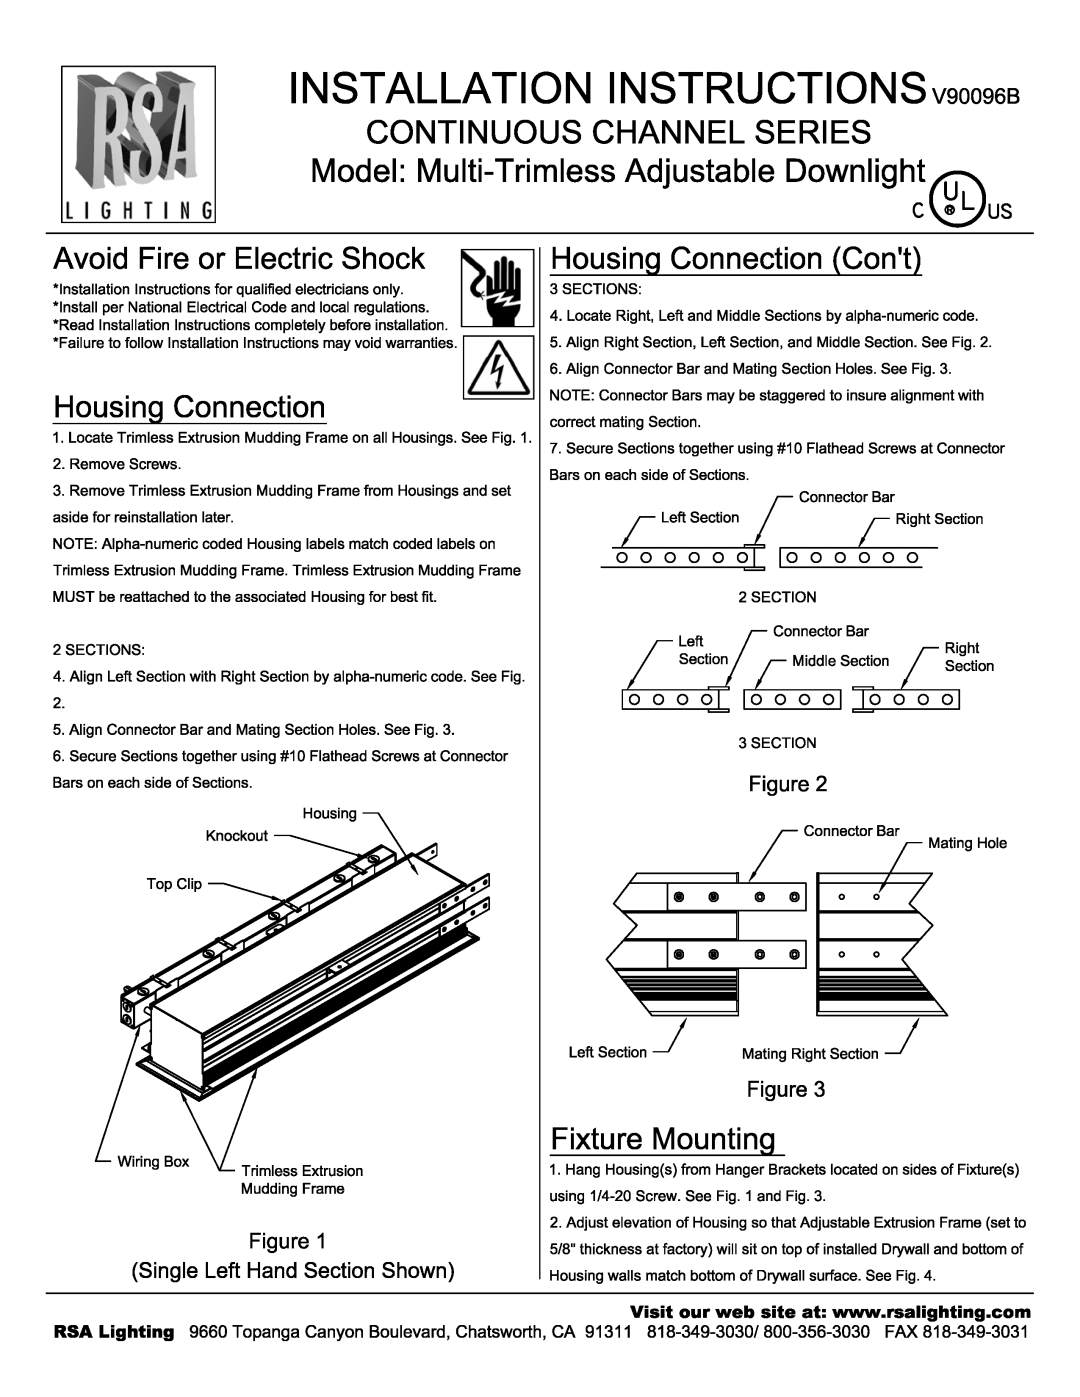 Cooper Lighting V90096B manual 